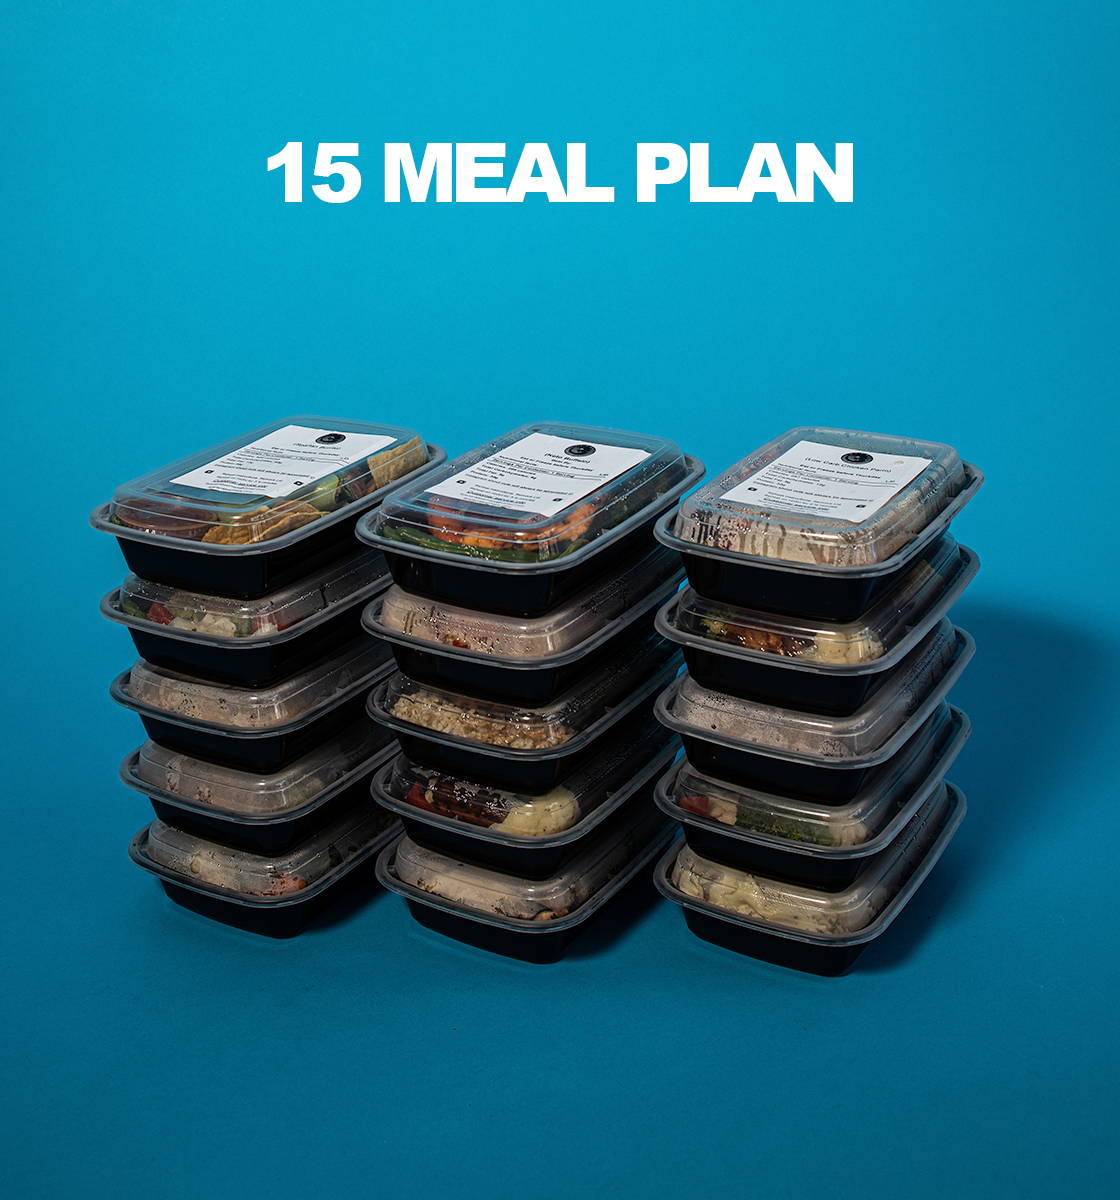 Plan de 15 comidas